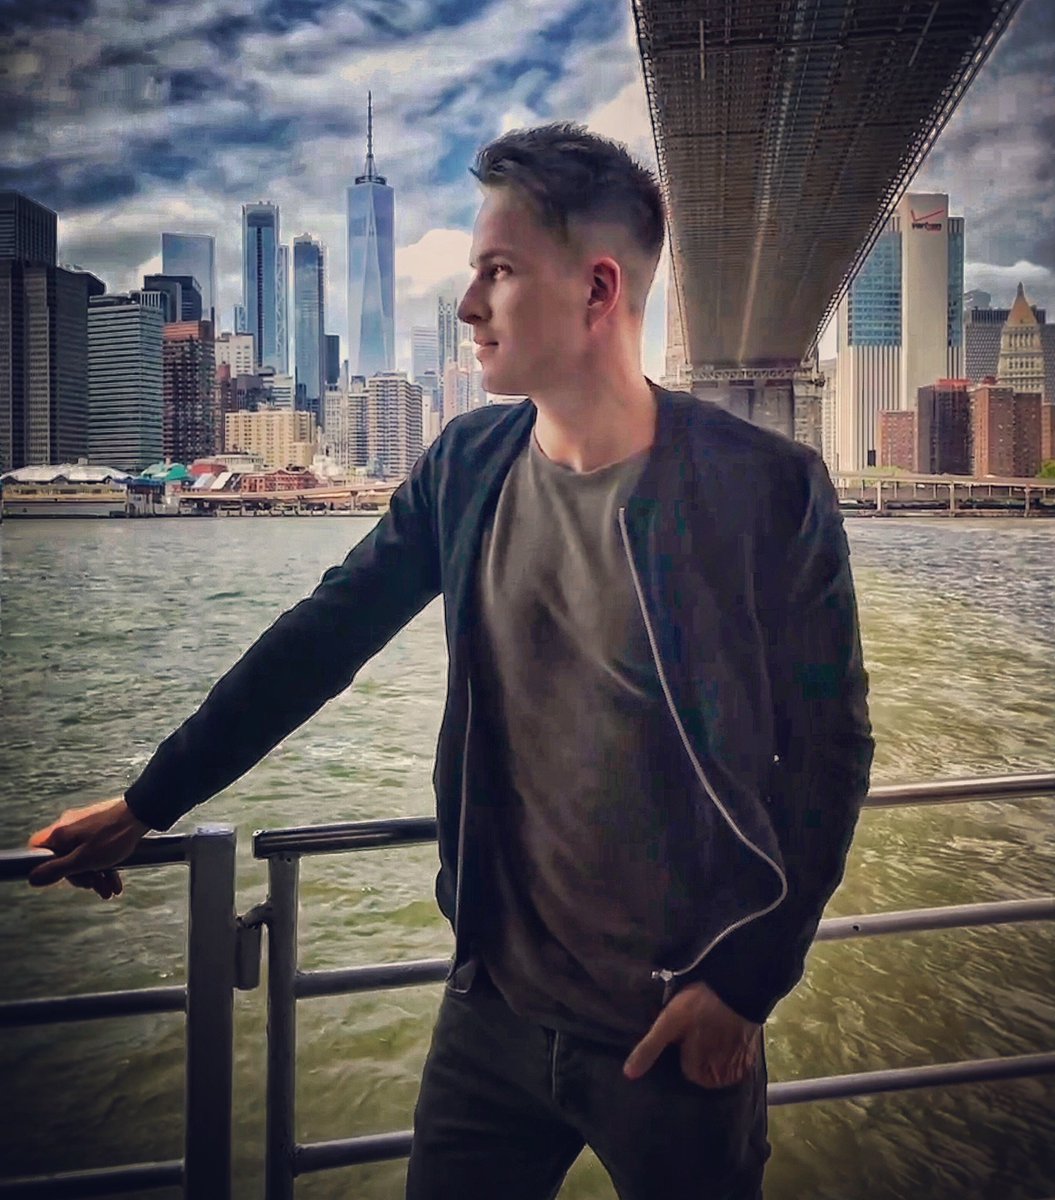 Hello from New York #newyork https://t.co/ny398e6SR7